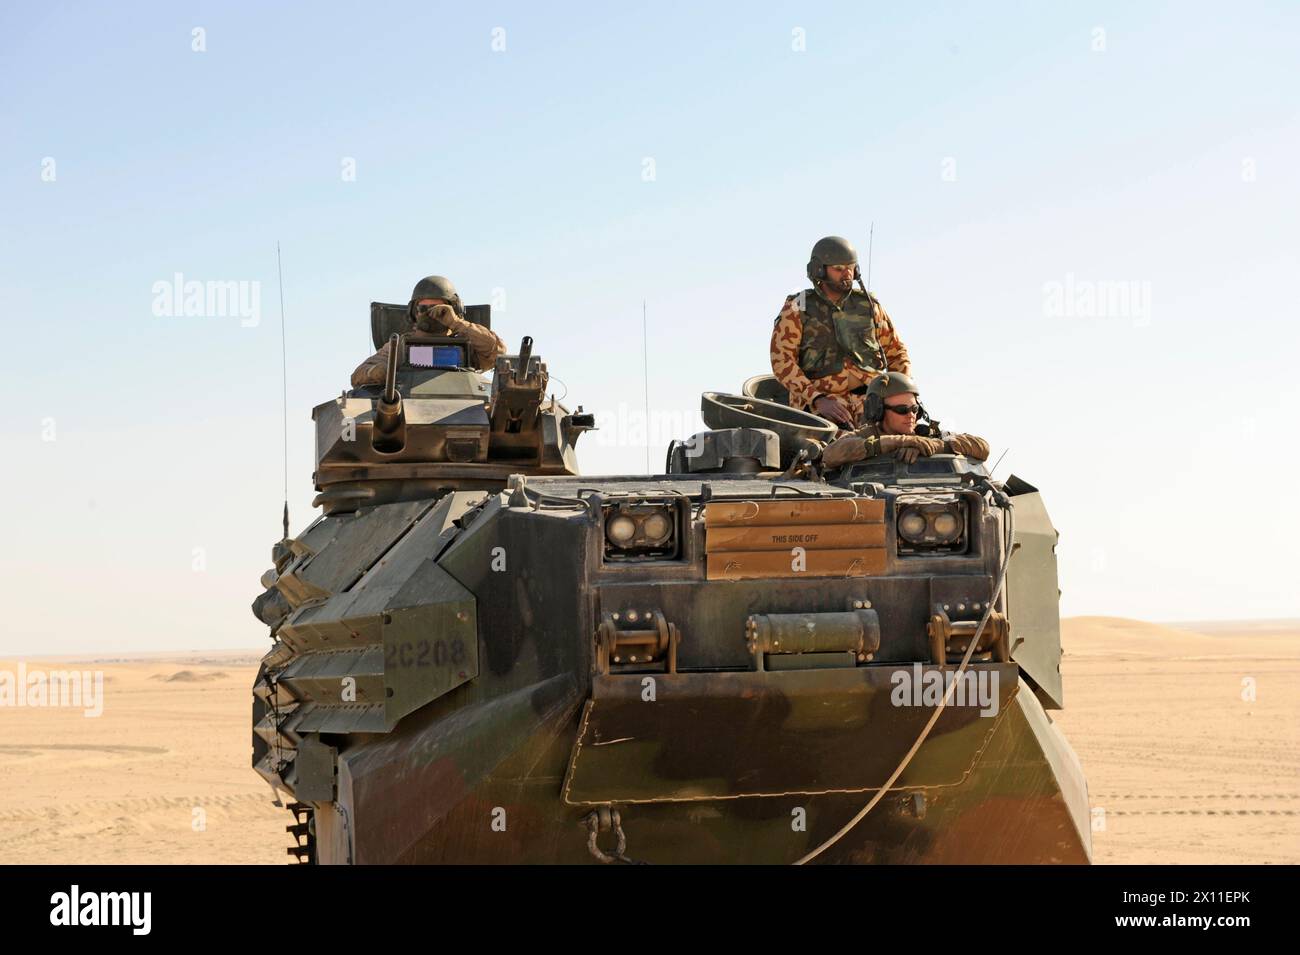 Ein Mitglied der kuwaitischen Streitkräfte (rechts) sitzt hinter einem US-Marine in einem Amphibienfahrzeug. Das Fahrzeug wurde während einer Zusammenarbeit zwischen der 26. Marine Expeditionary Unit und den einheimischen Truppen CA eingesetzt. Januar 2004 oder (2009 PER-Metadaten) Stockfoto